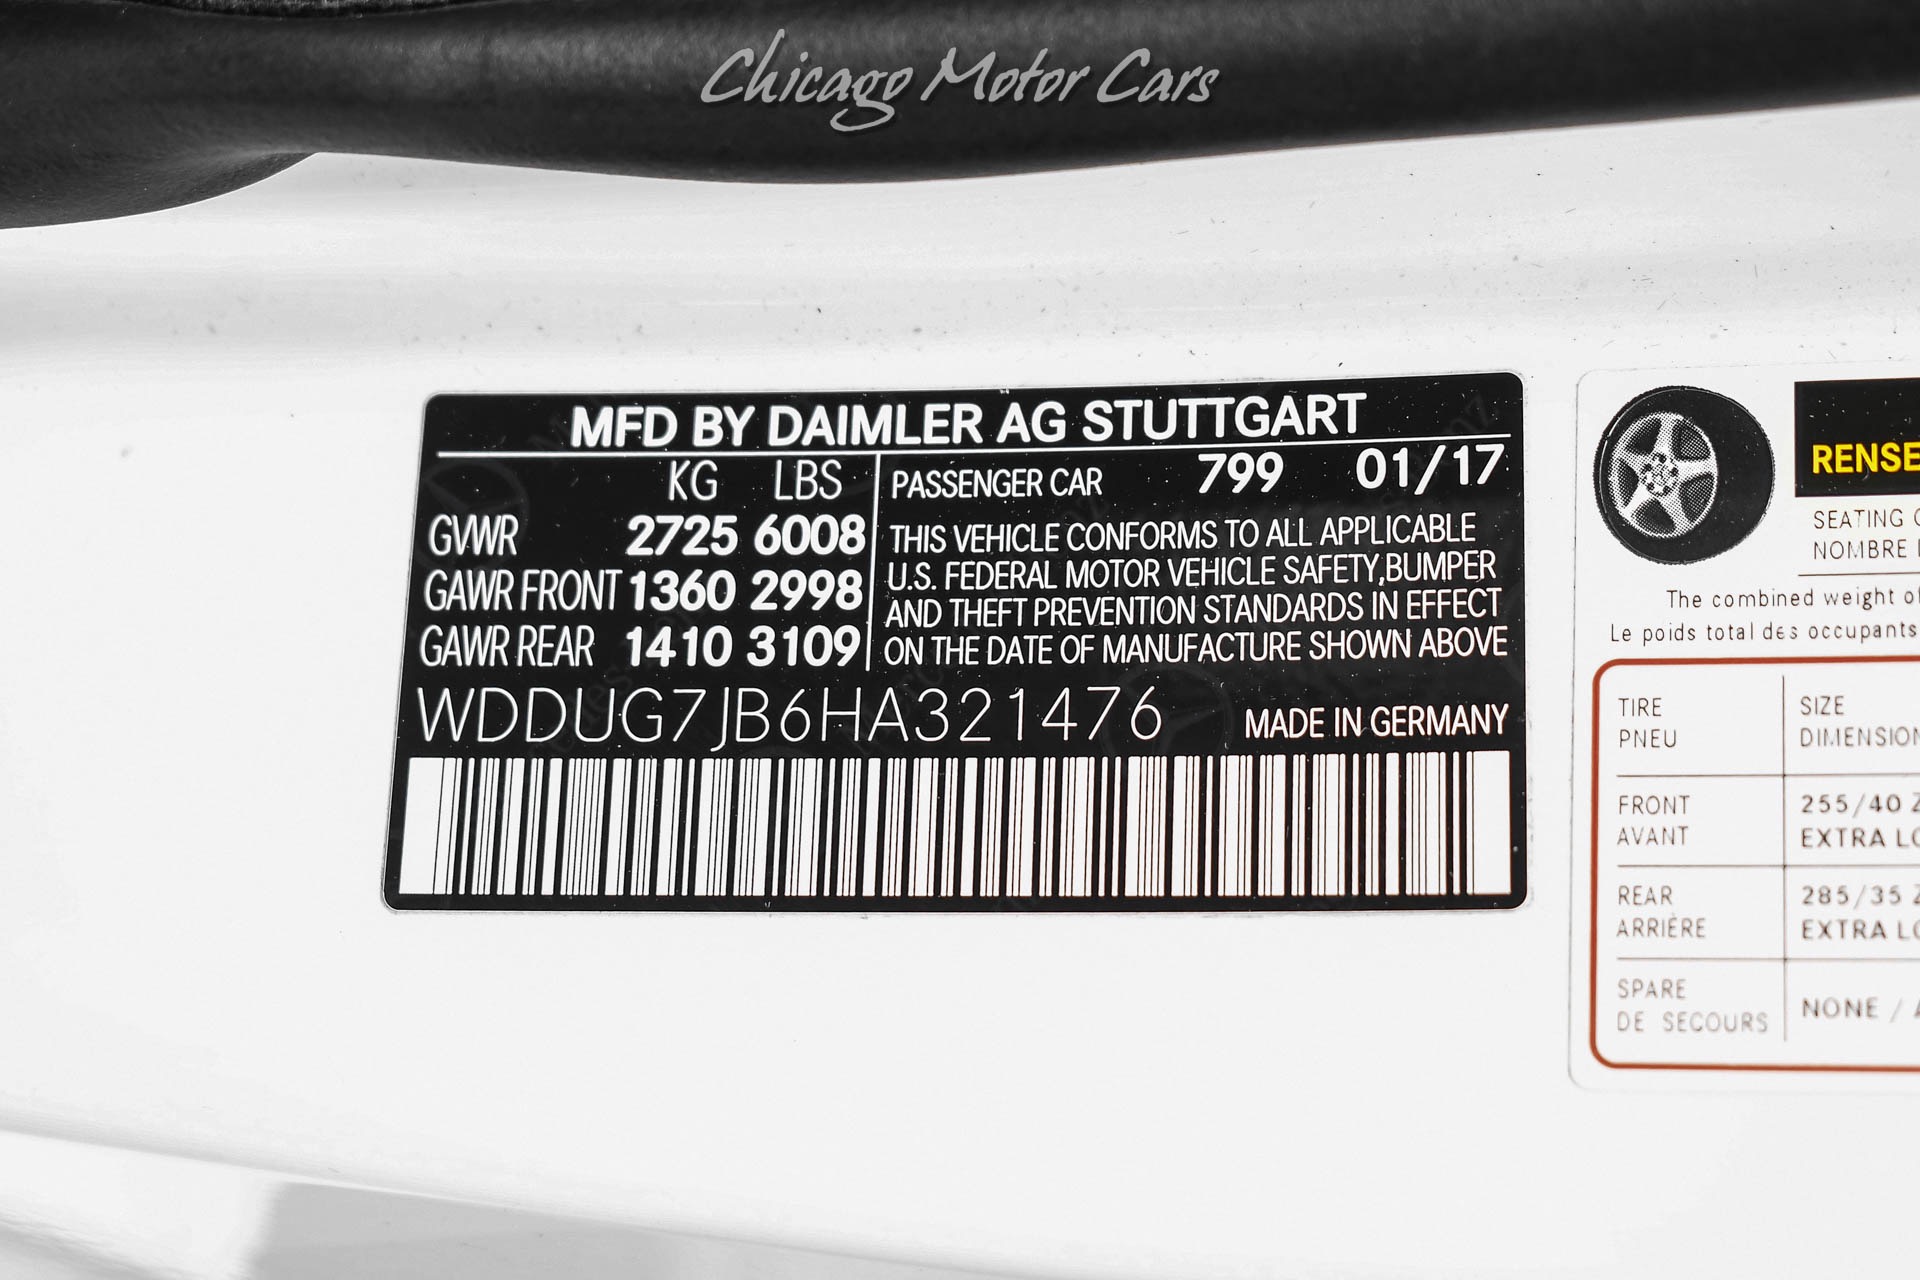 Used-2017-Mercedes-Benz-S-63-AMG-Sedan-MSRP-165K-Exclusive-Trim-Pkg-Comfort-Pkg-Carbon-Trim-LOADED